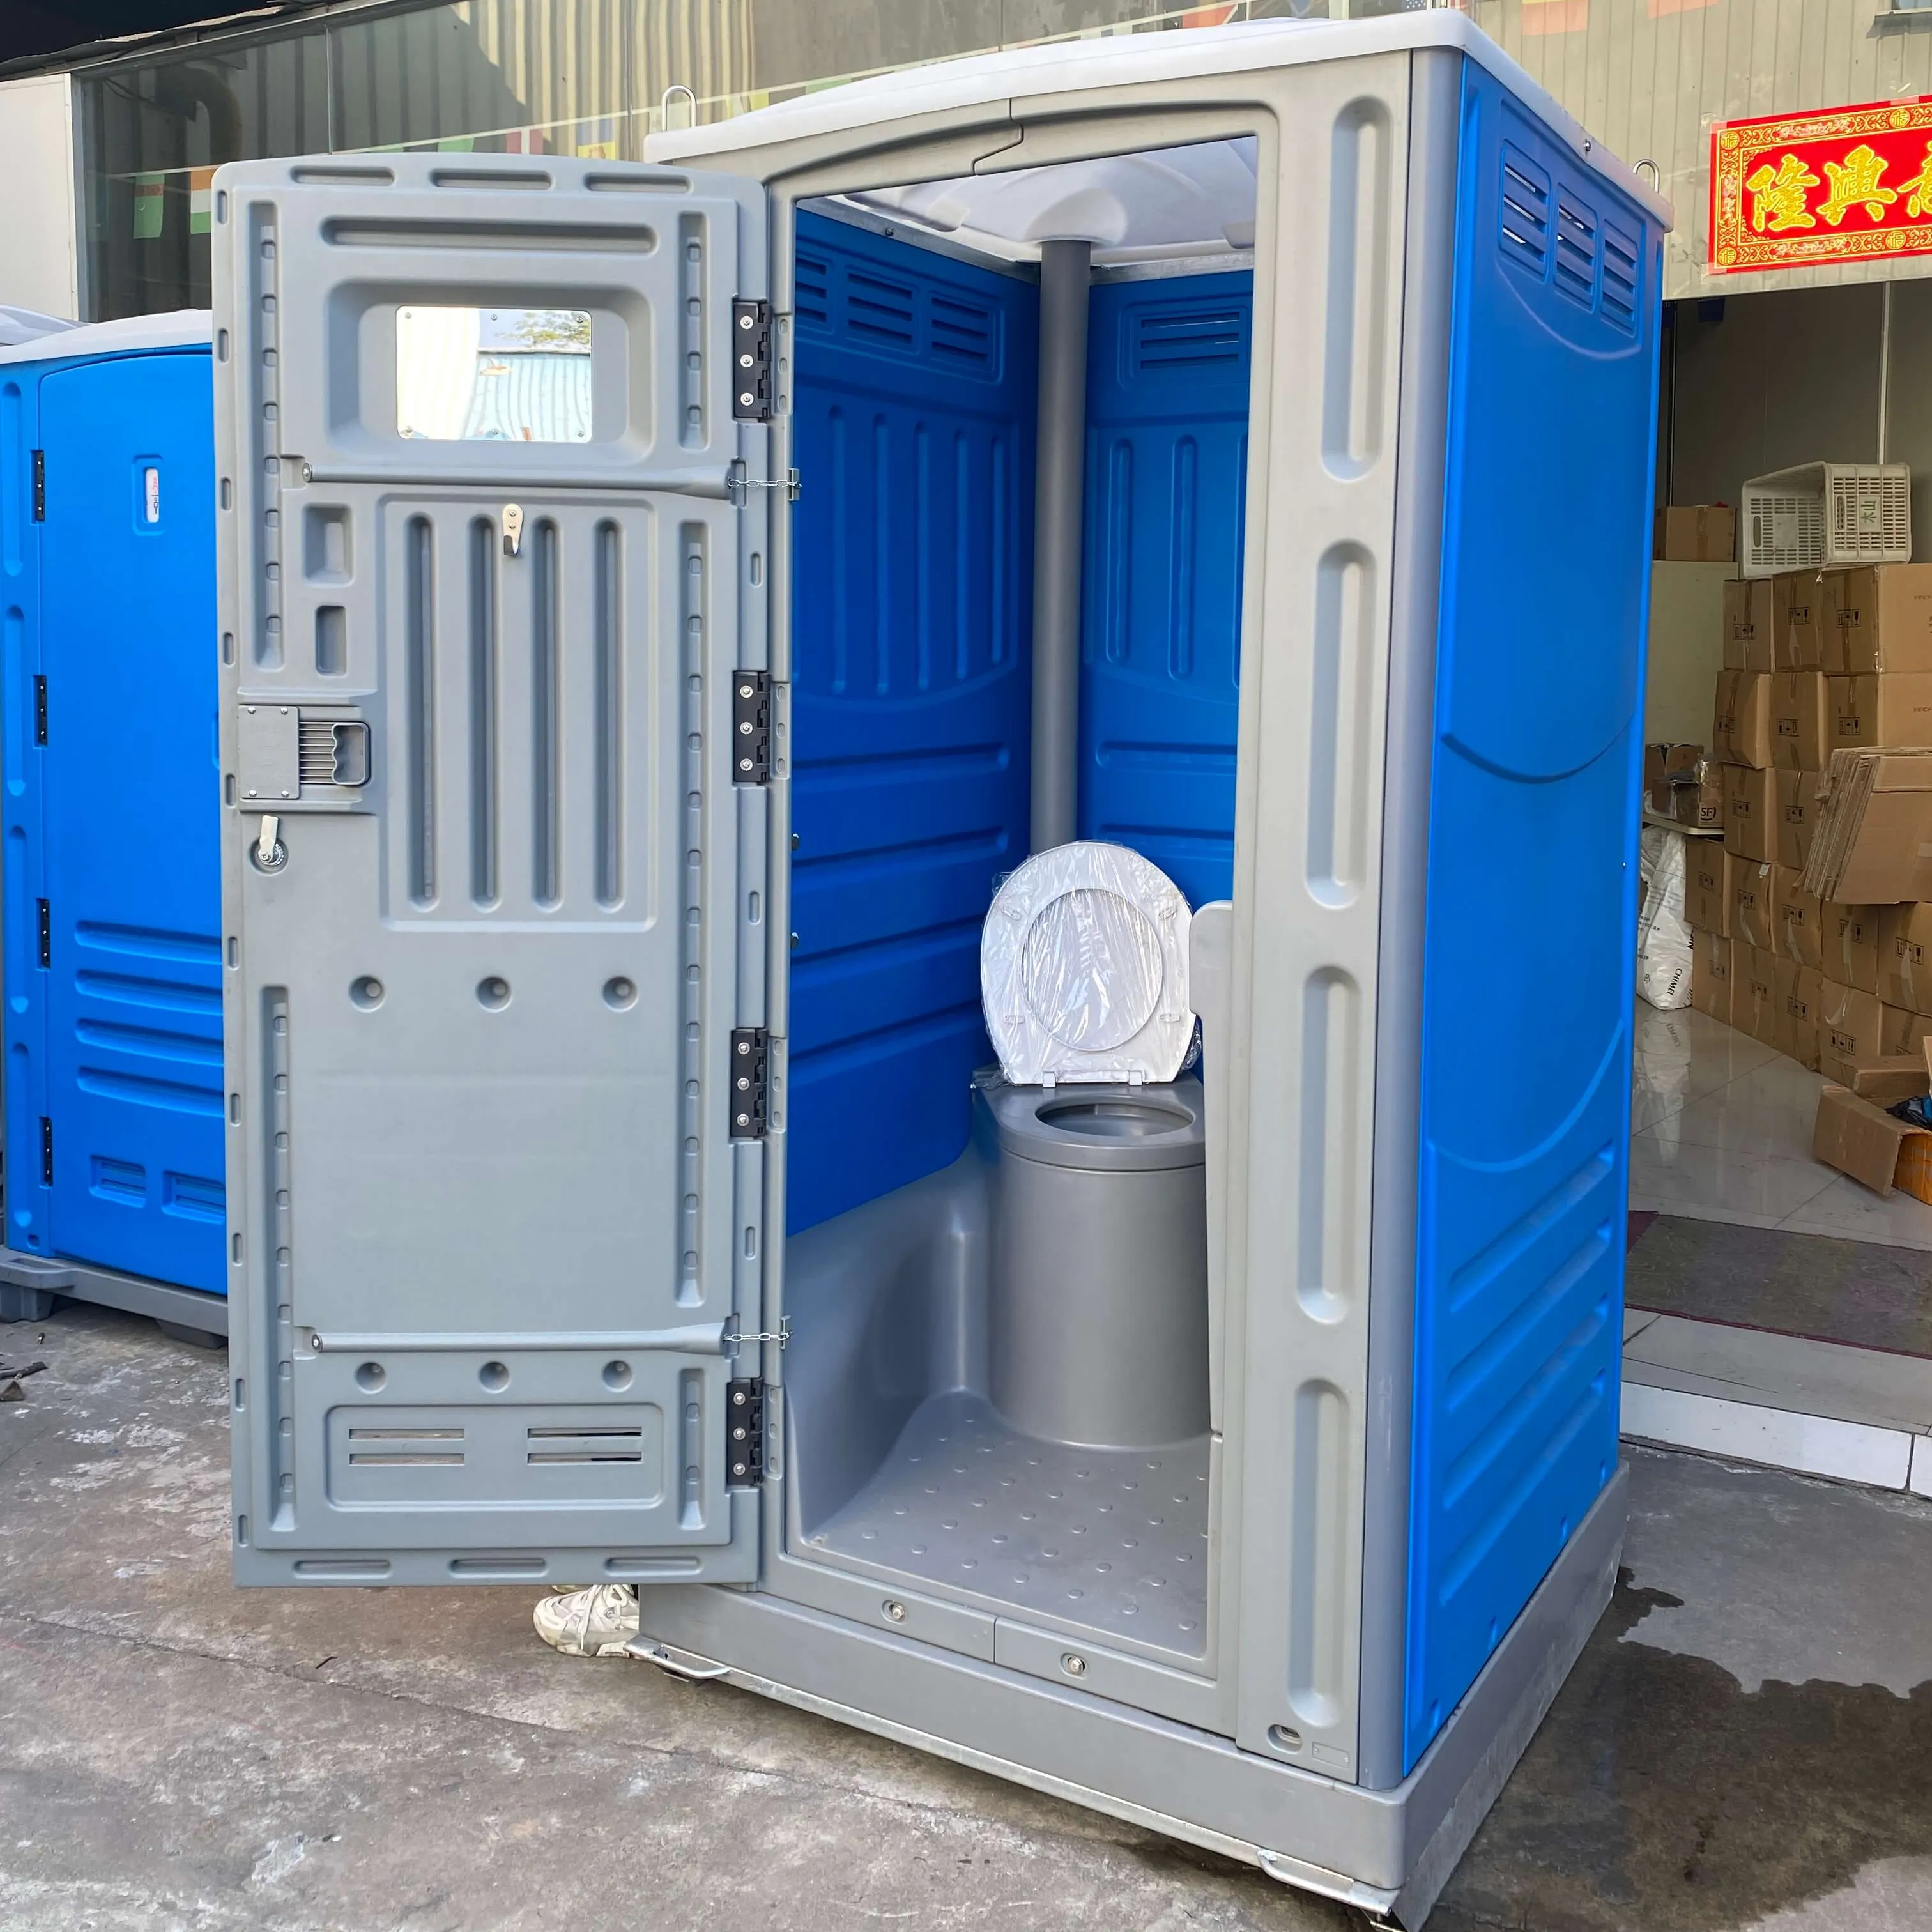 Abnehmbare tragbare Toilette Auto mit Outdoor-Camping gehen außerhalb bewegliche tragbare Toilette globale heiße tragbare Toilette kosten günstig gut